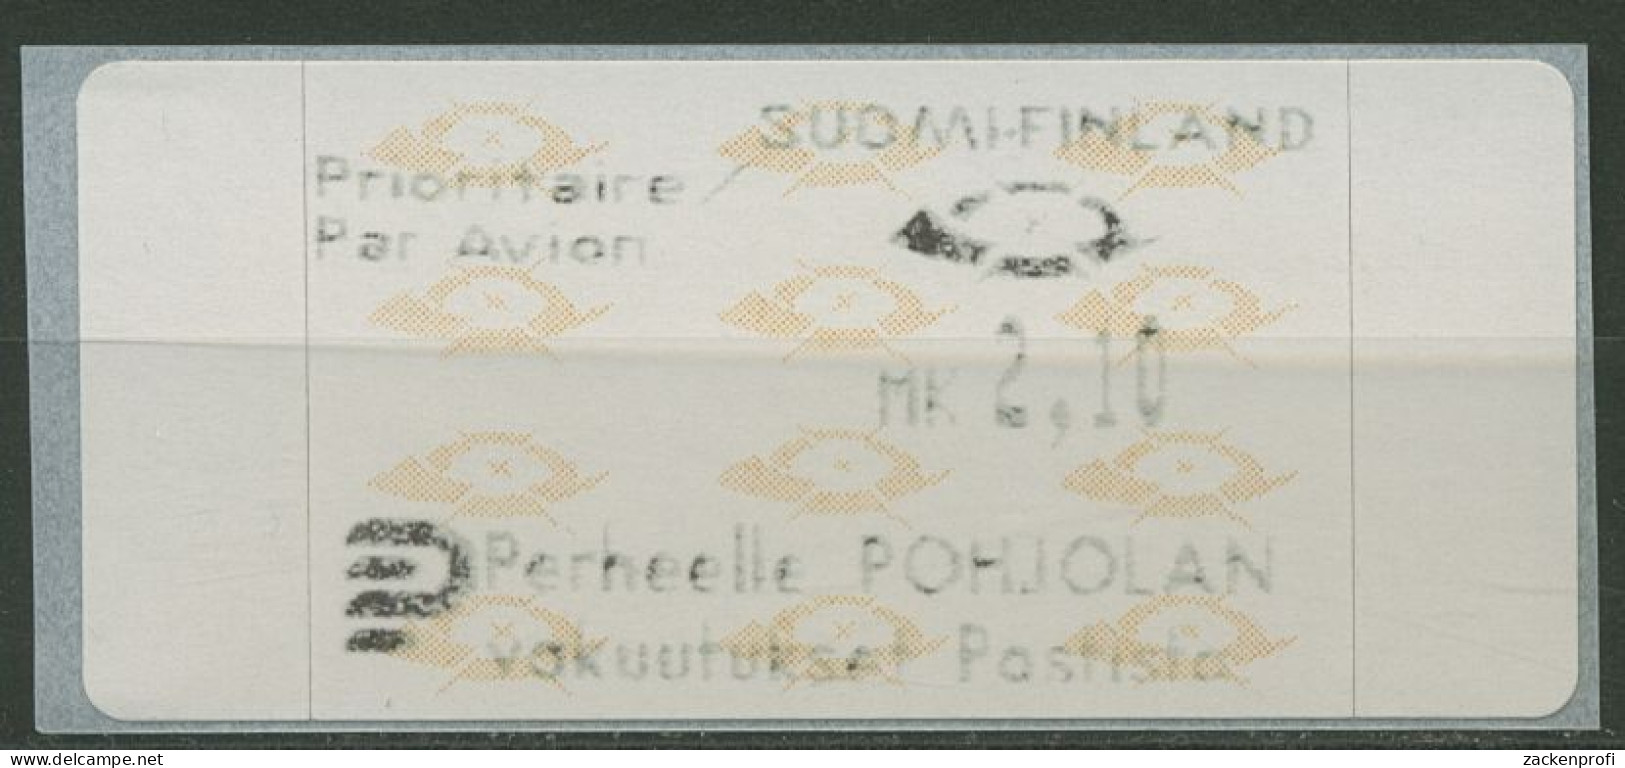 Finnland Automatenmarken 1992 Posthörner Einzelwert ATM 12.3 Z6 Postfrisch - Automatenmarken [ATM]